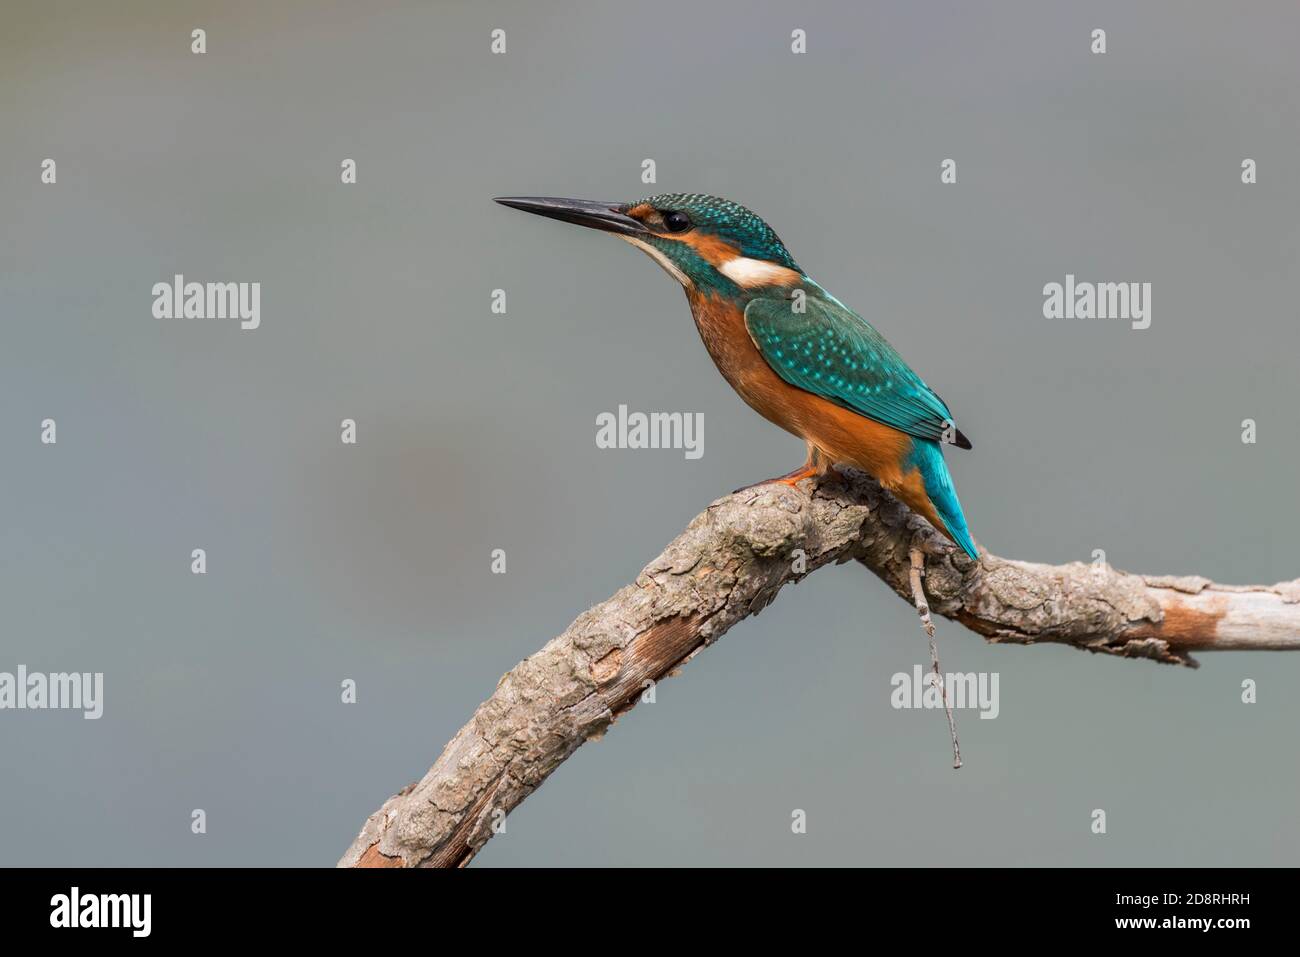 kingfisher commun sur une vue de profil de branche Banque D'Images